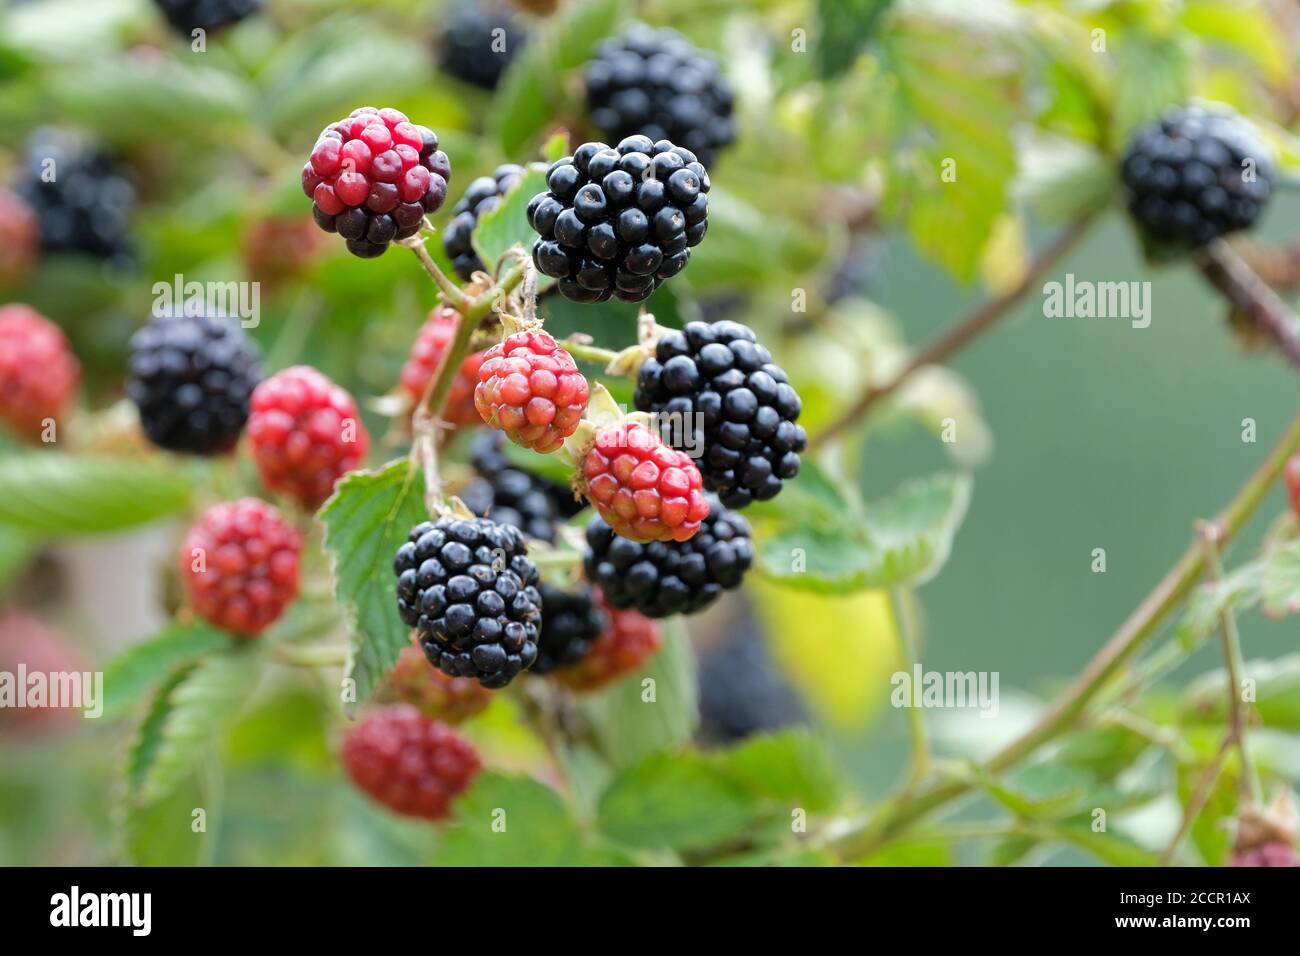 sin espinas blackberry Navaho. Rubus fruticosus 'Navaho'. Fruta madura creciendo en un arbusto Foto de stock